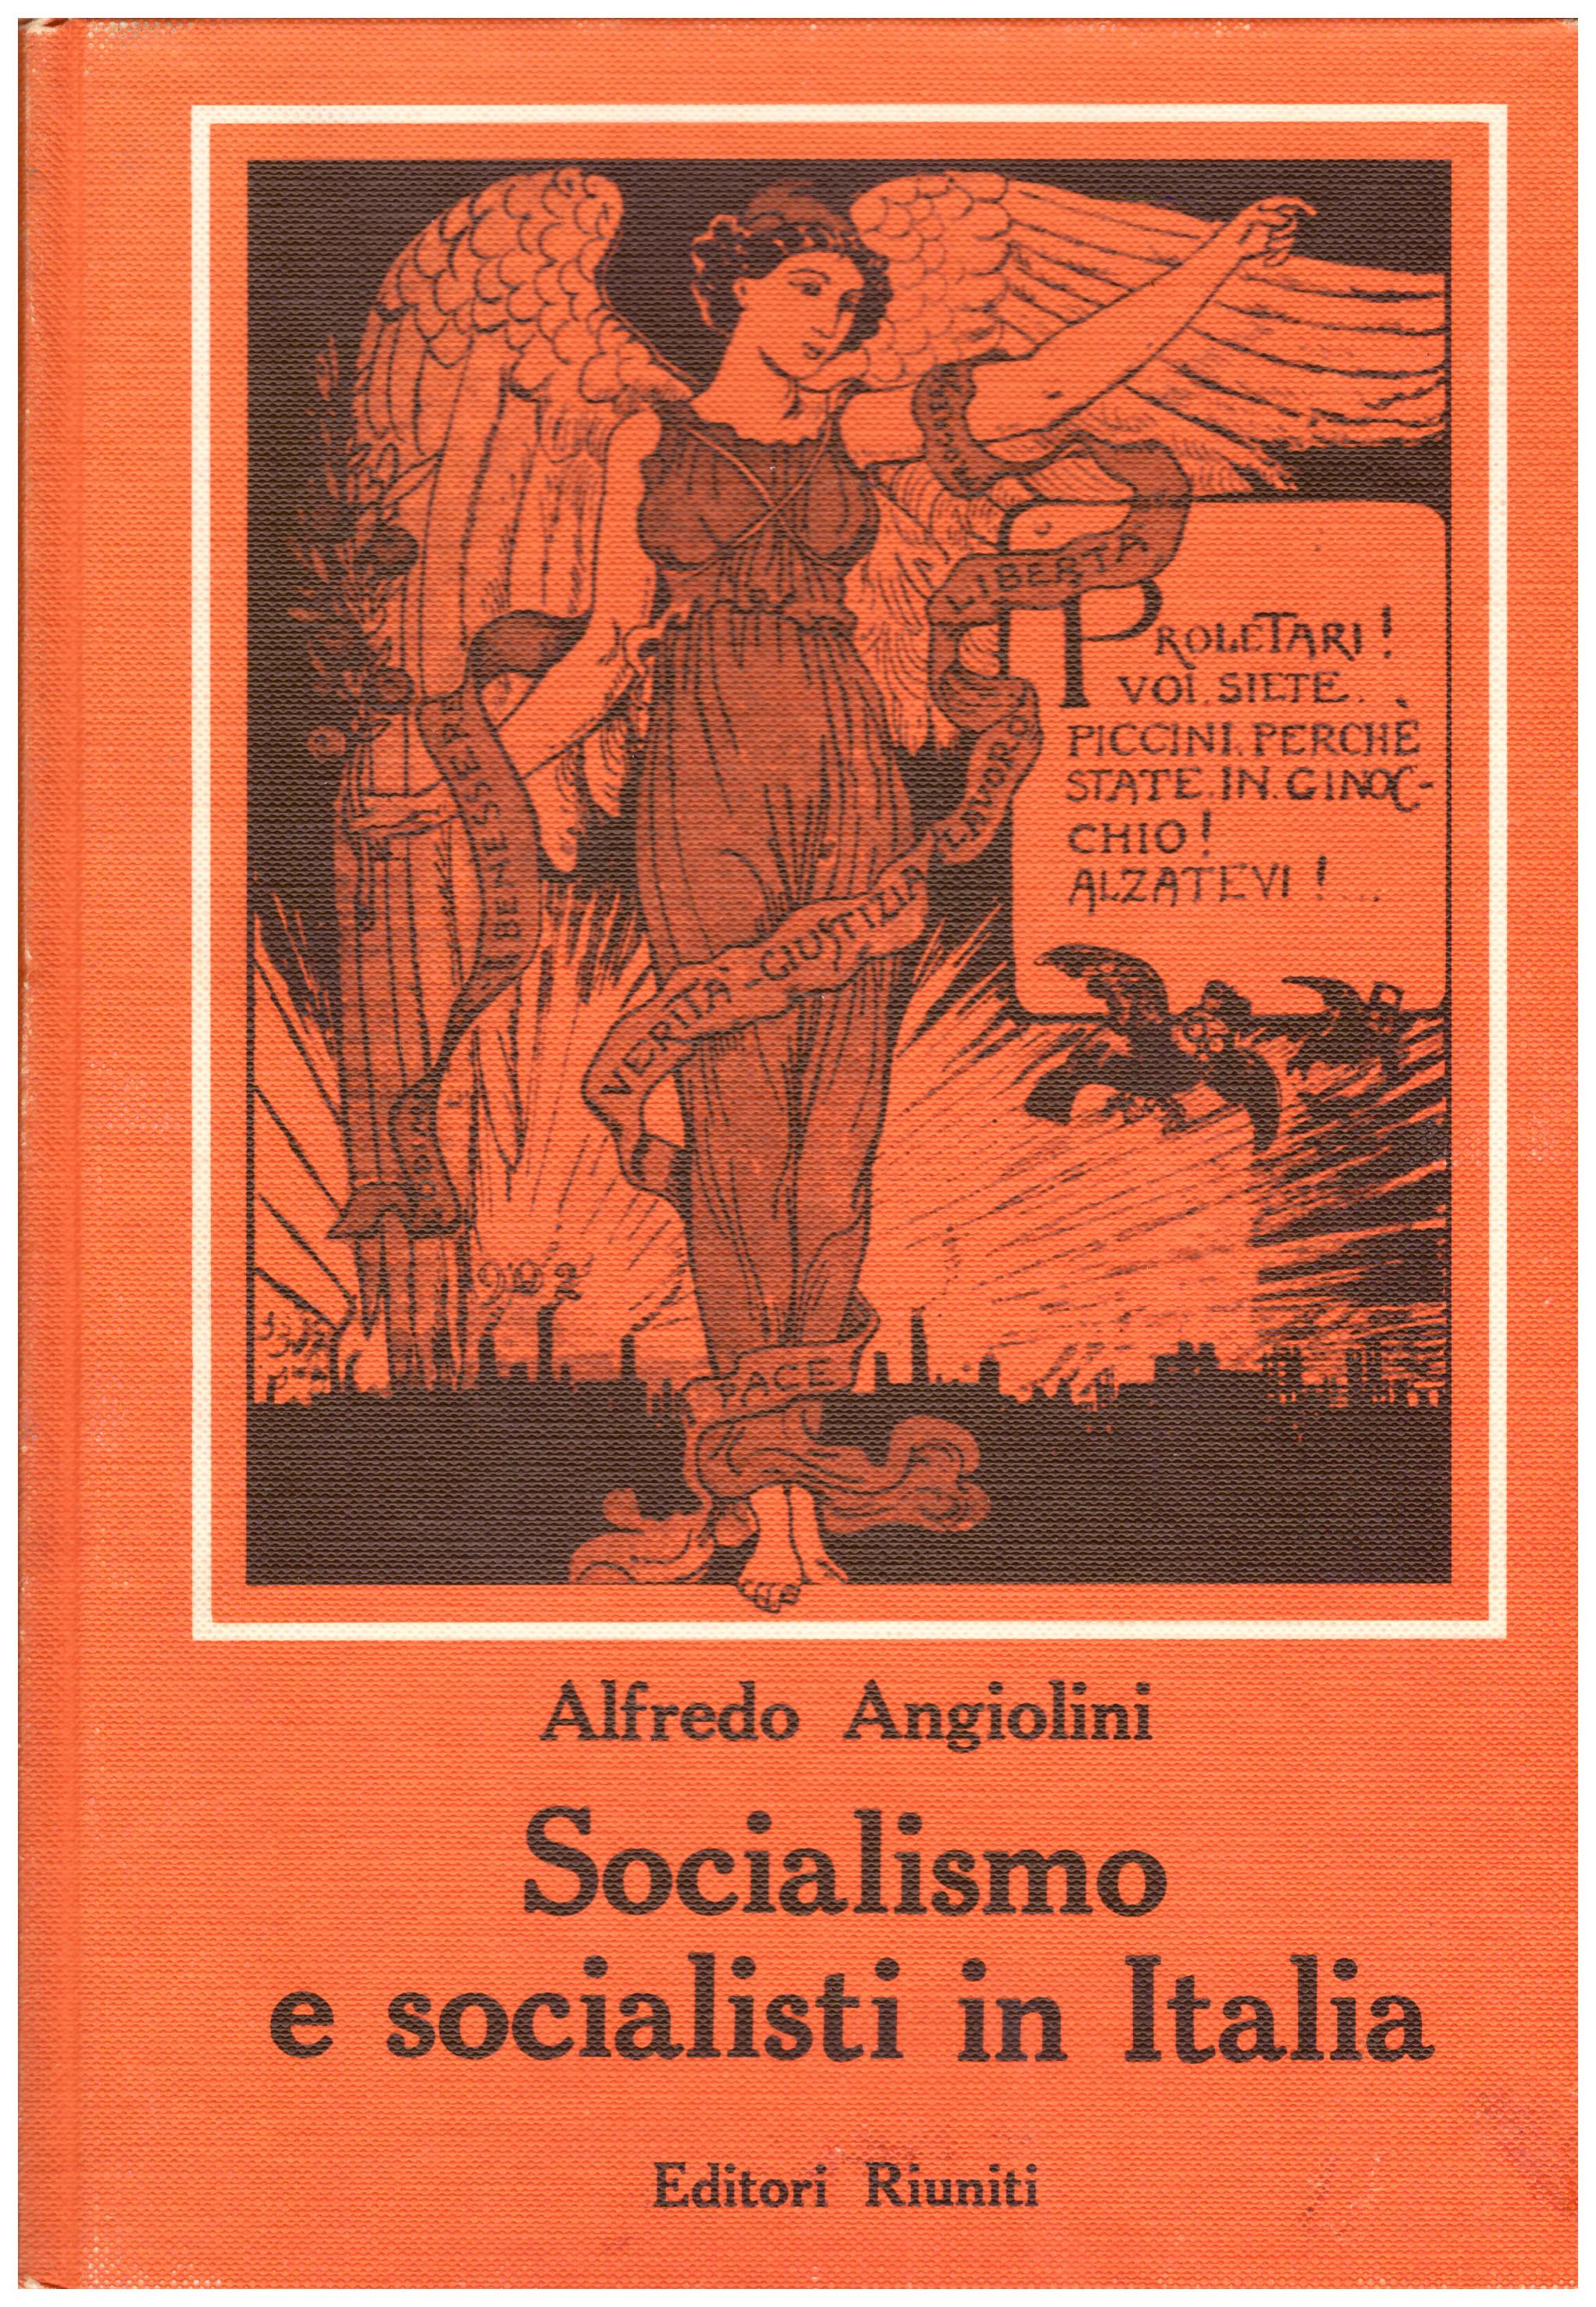 Titolo: Socialismo e socialisti in Italia Autore: Alfredo Angiolini Editore: editori riuniti, 1966